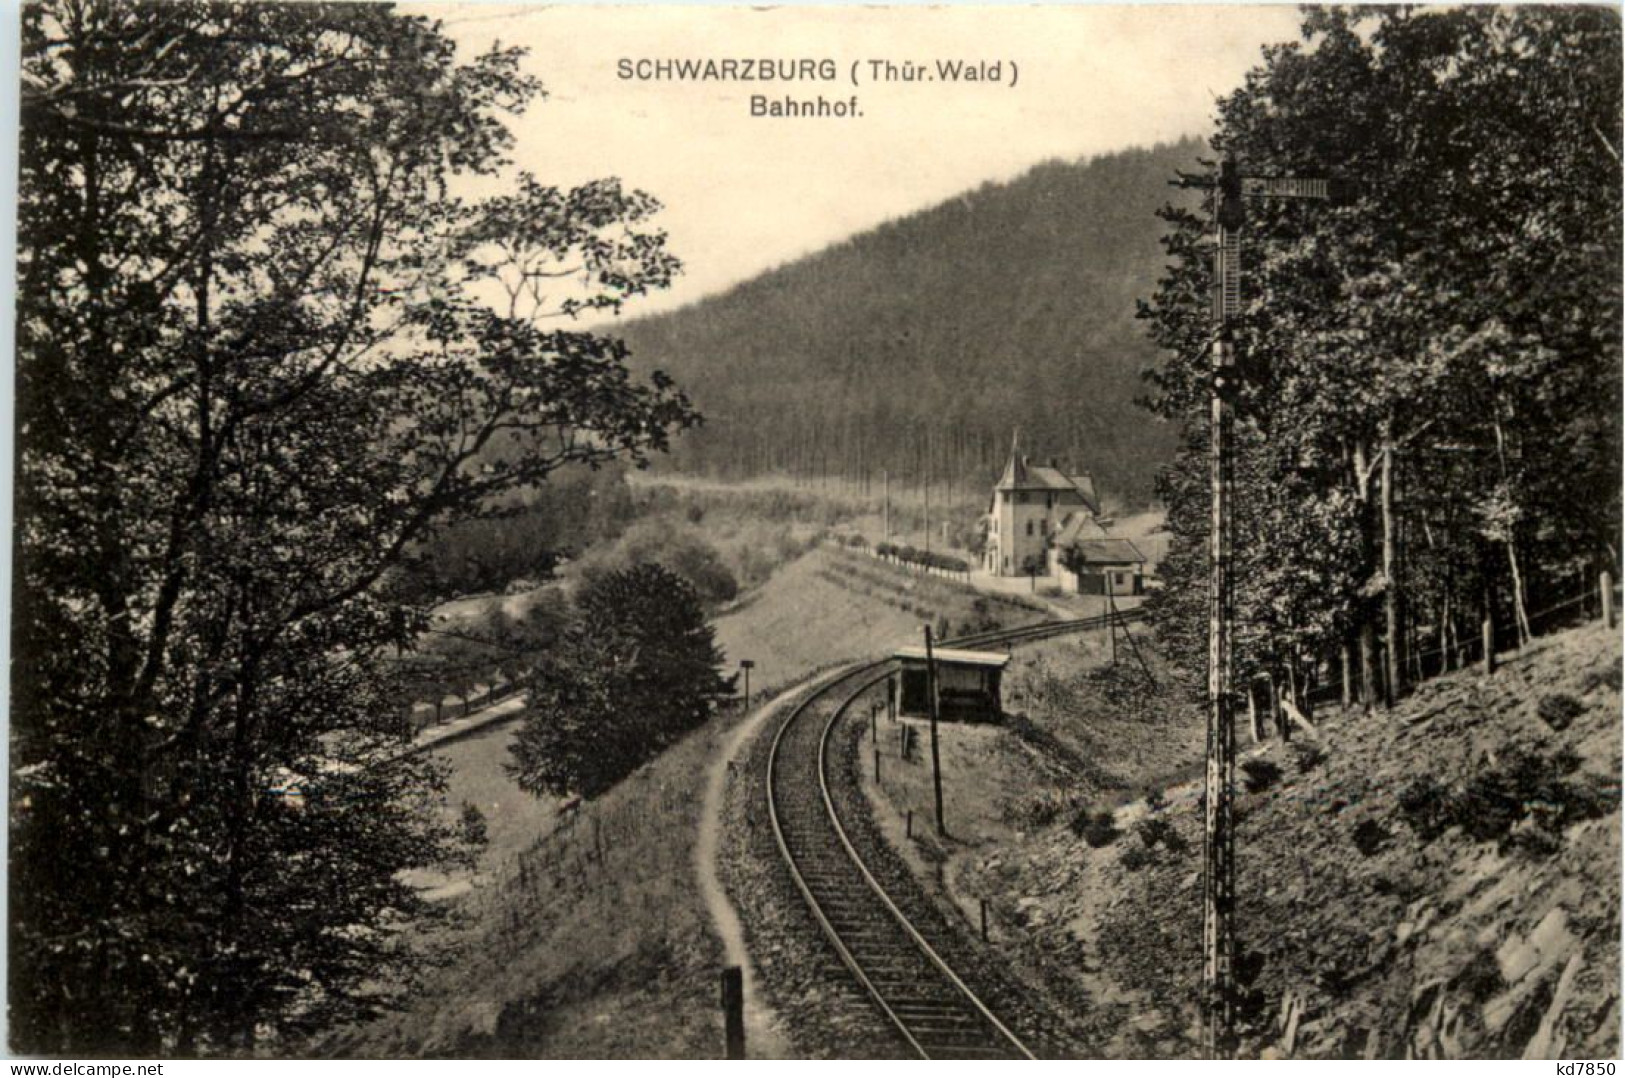 Schwarzburg, Bahnhof - Saalfeld